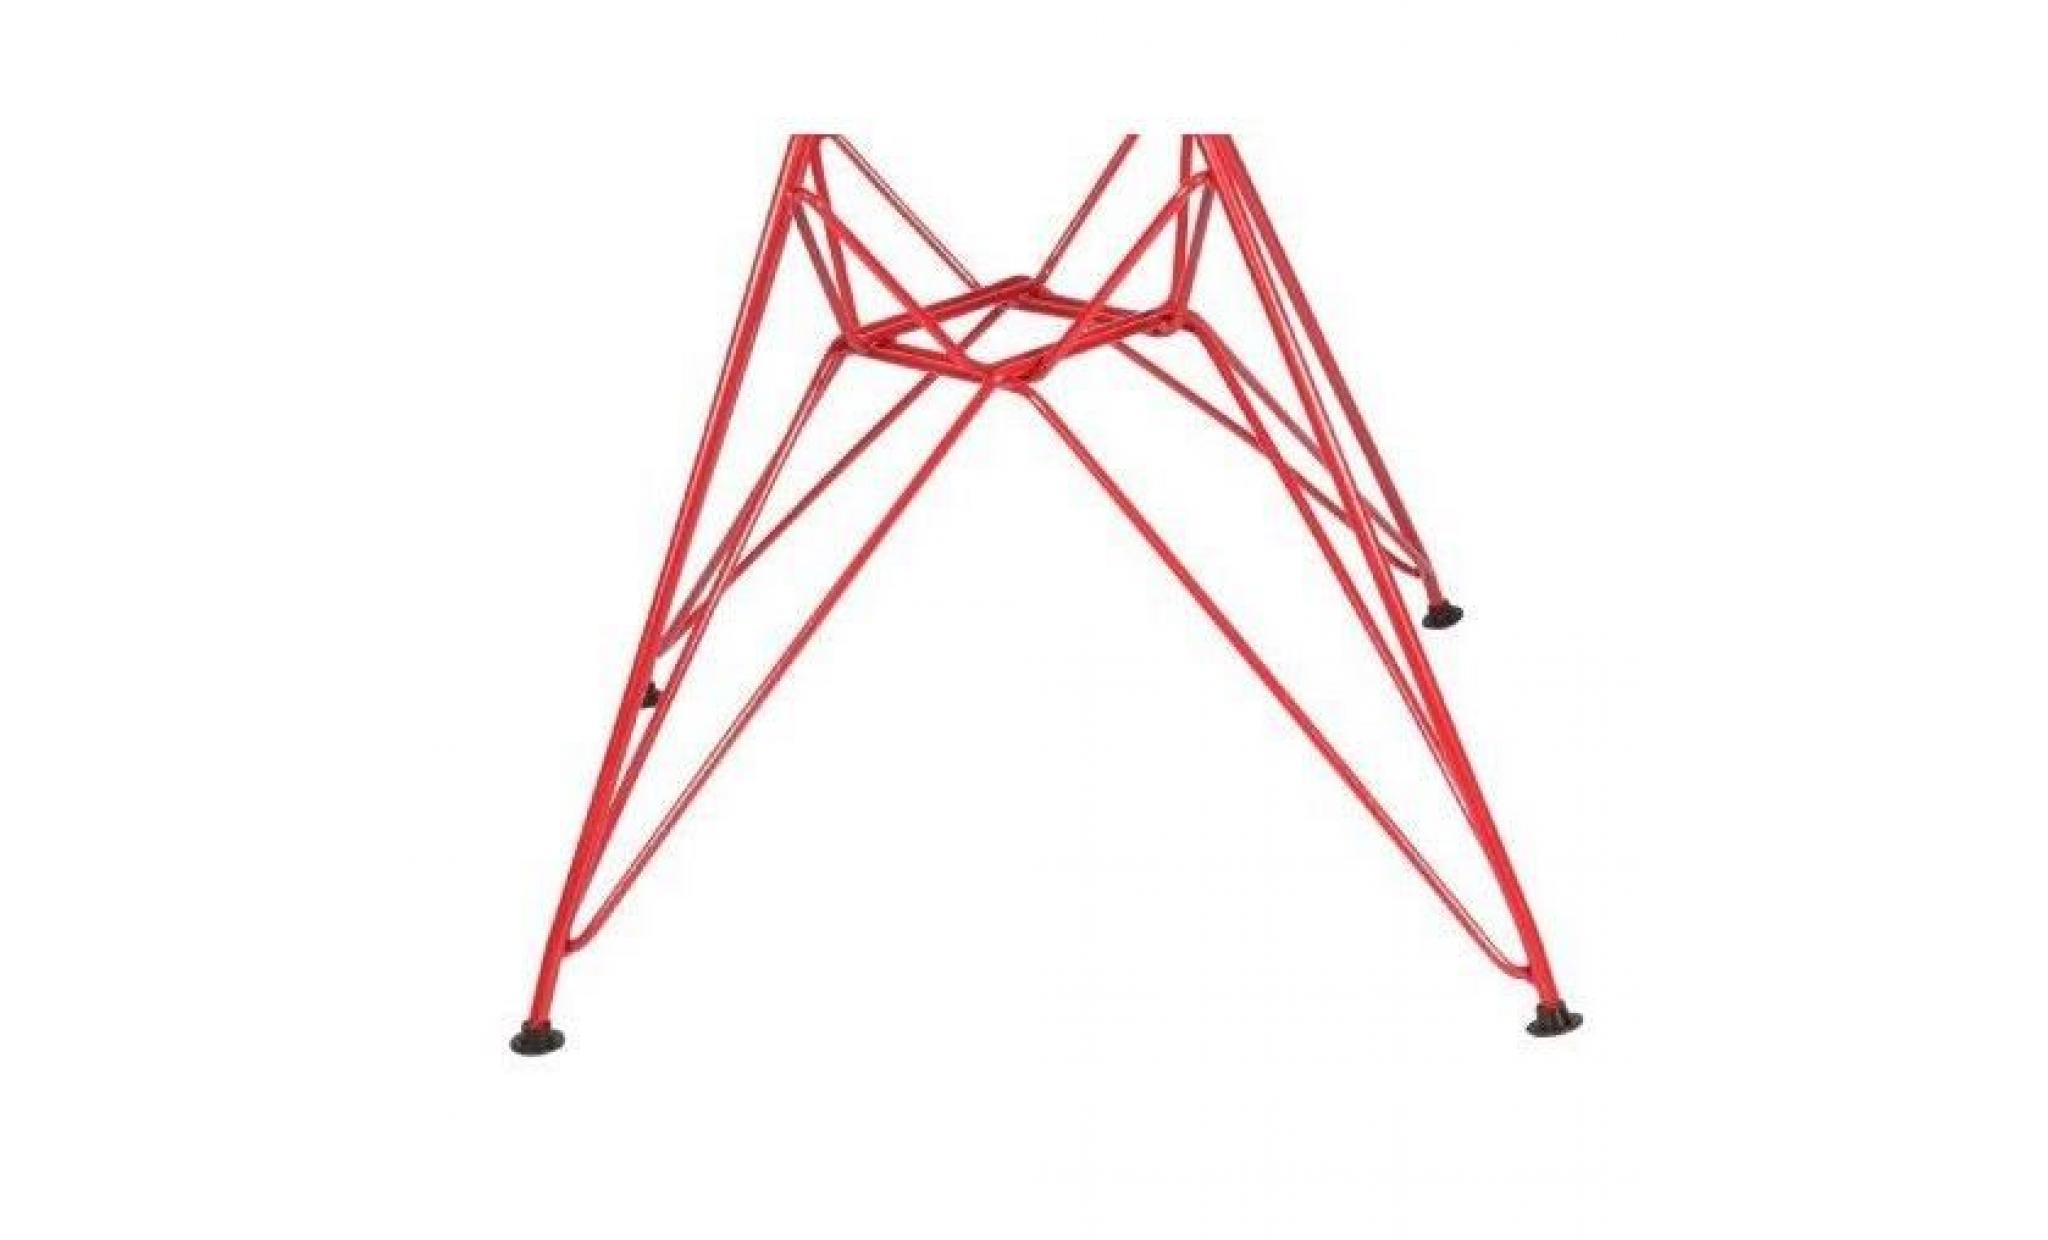 1 x fauteuil design  inspiration eiffel  vert pale pieds: acier rouge decopresto dp darr vp 1 pas cher